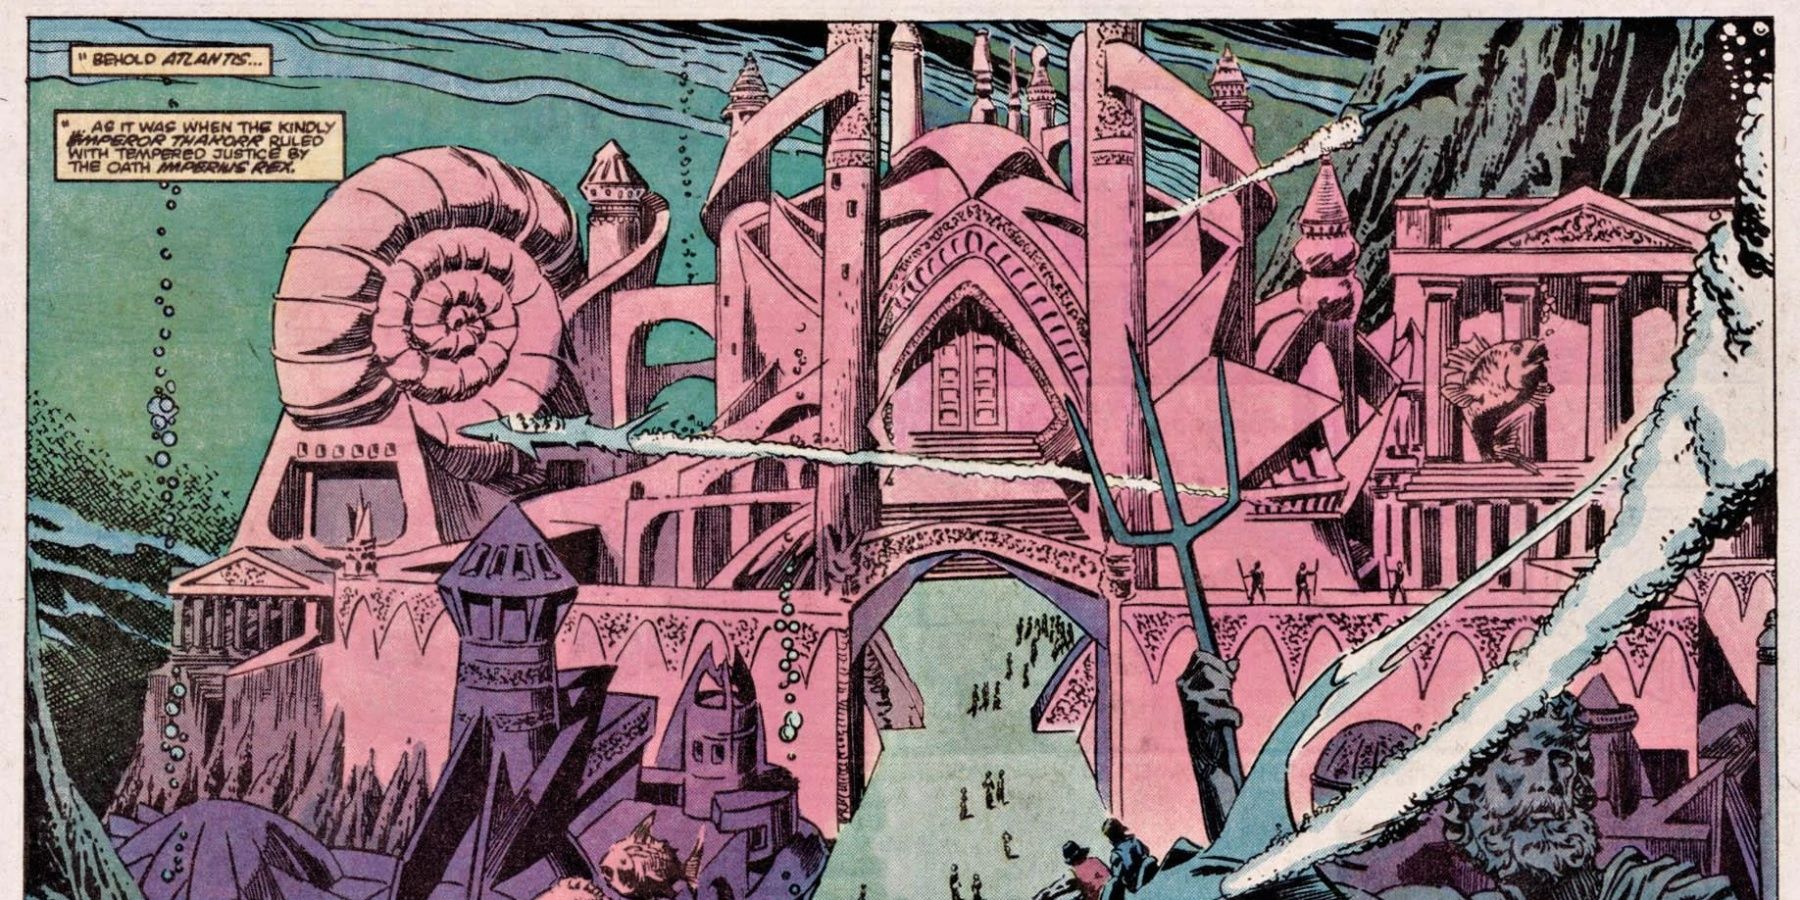 Atlantis in marvel comics